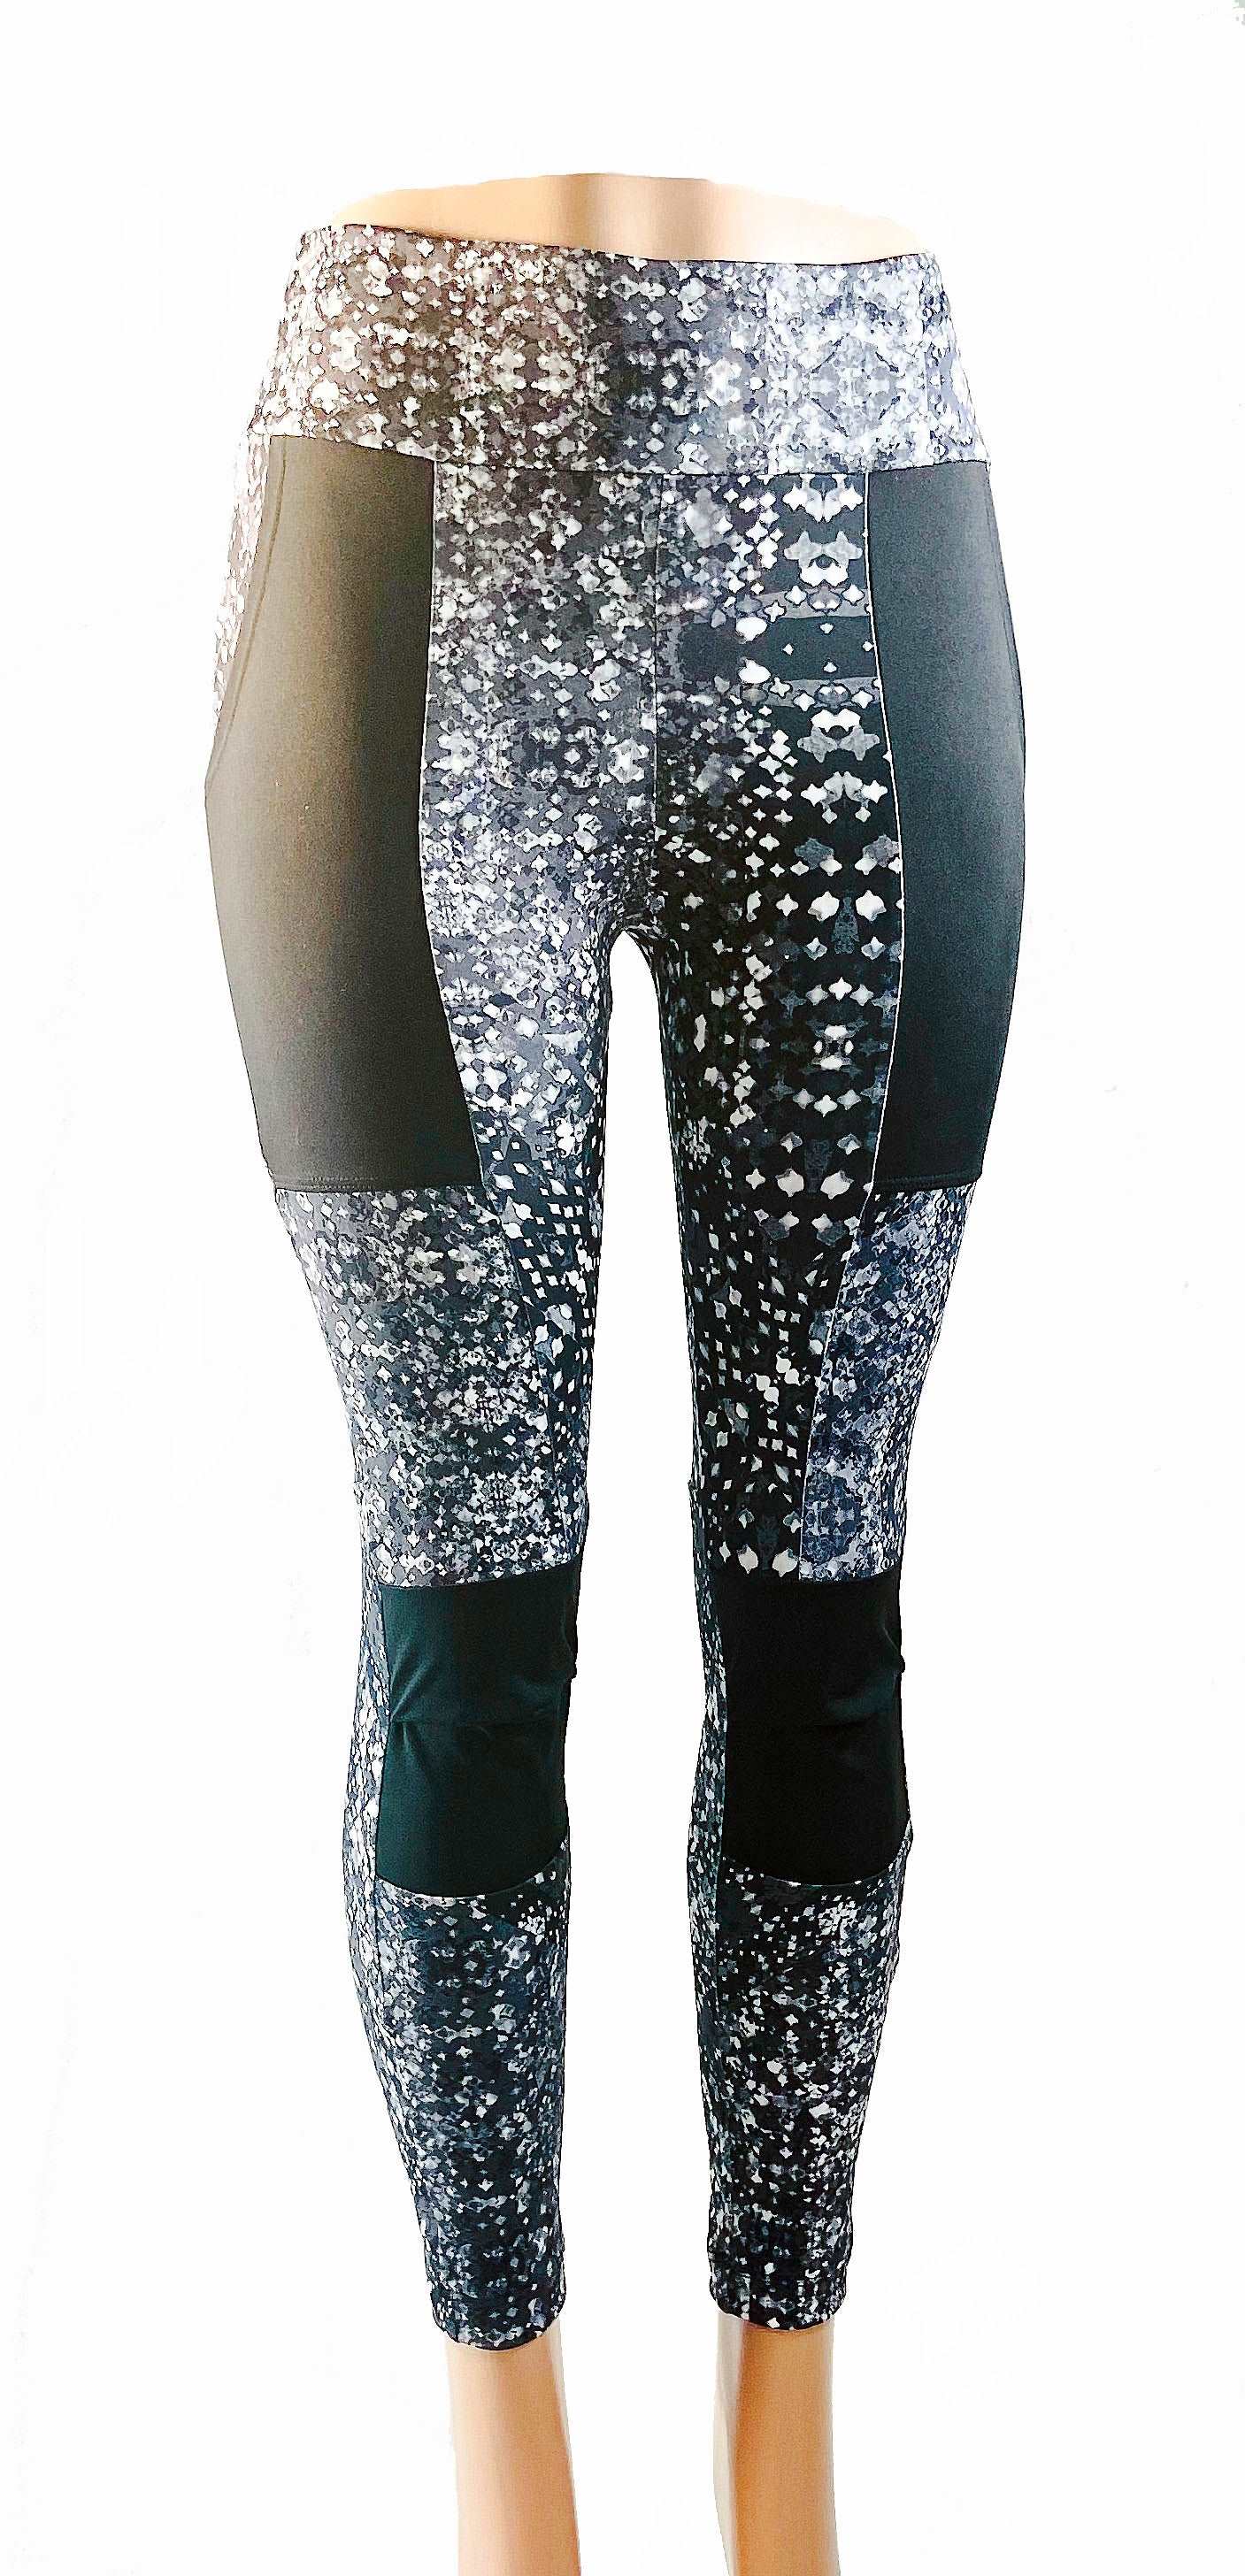 Enduro Mountain Bike Pants Galaxy  Moxie Cycling: Bike Jerseys, Bike  Shorts & Bike Pants Made for Women